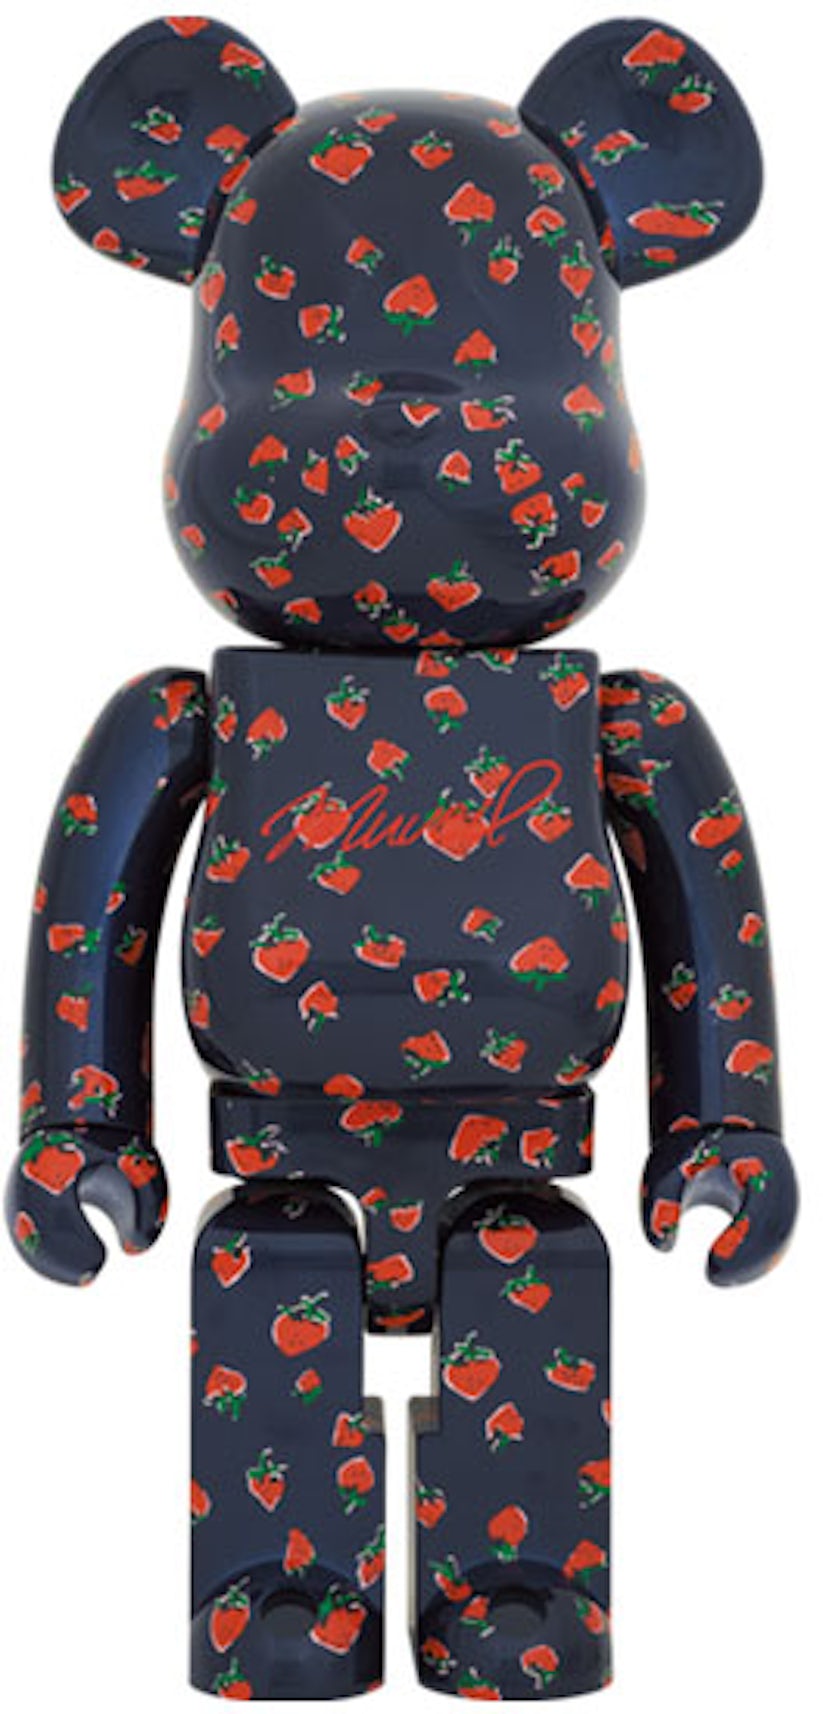 MUVEIL Strawberry 1000% Bearbrick by Medicom Toy - Mindzai